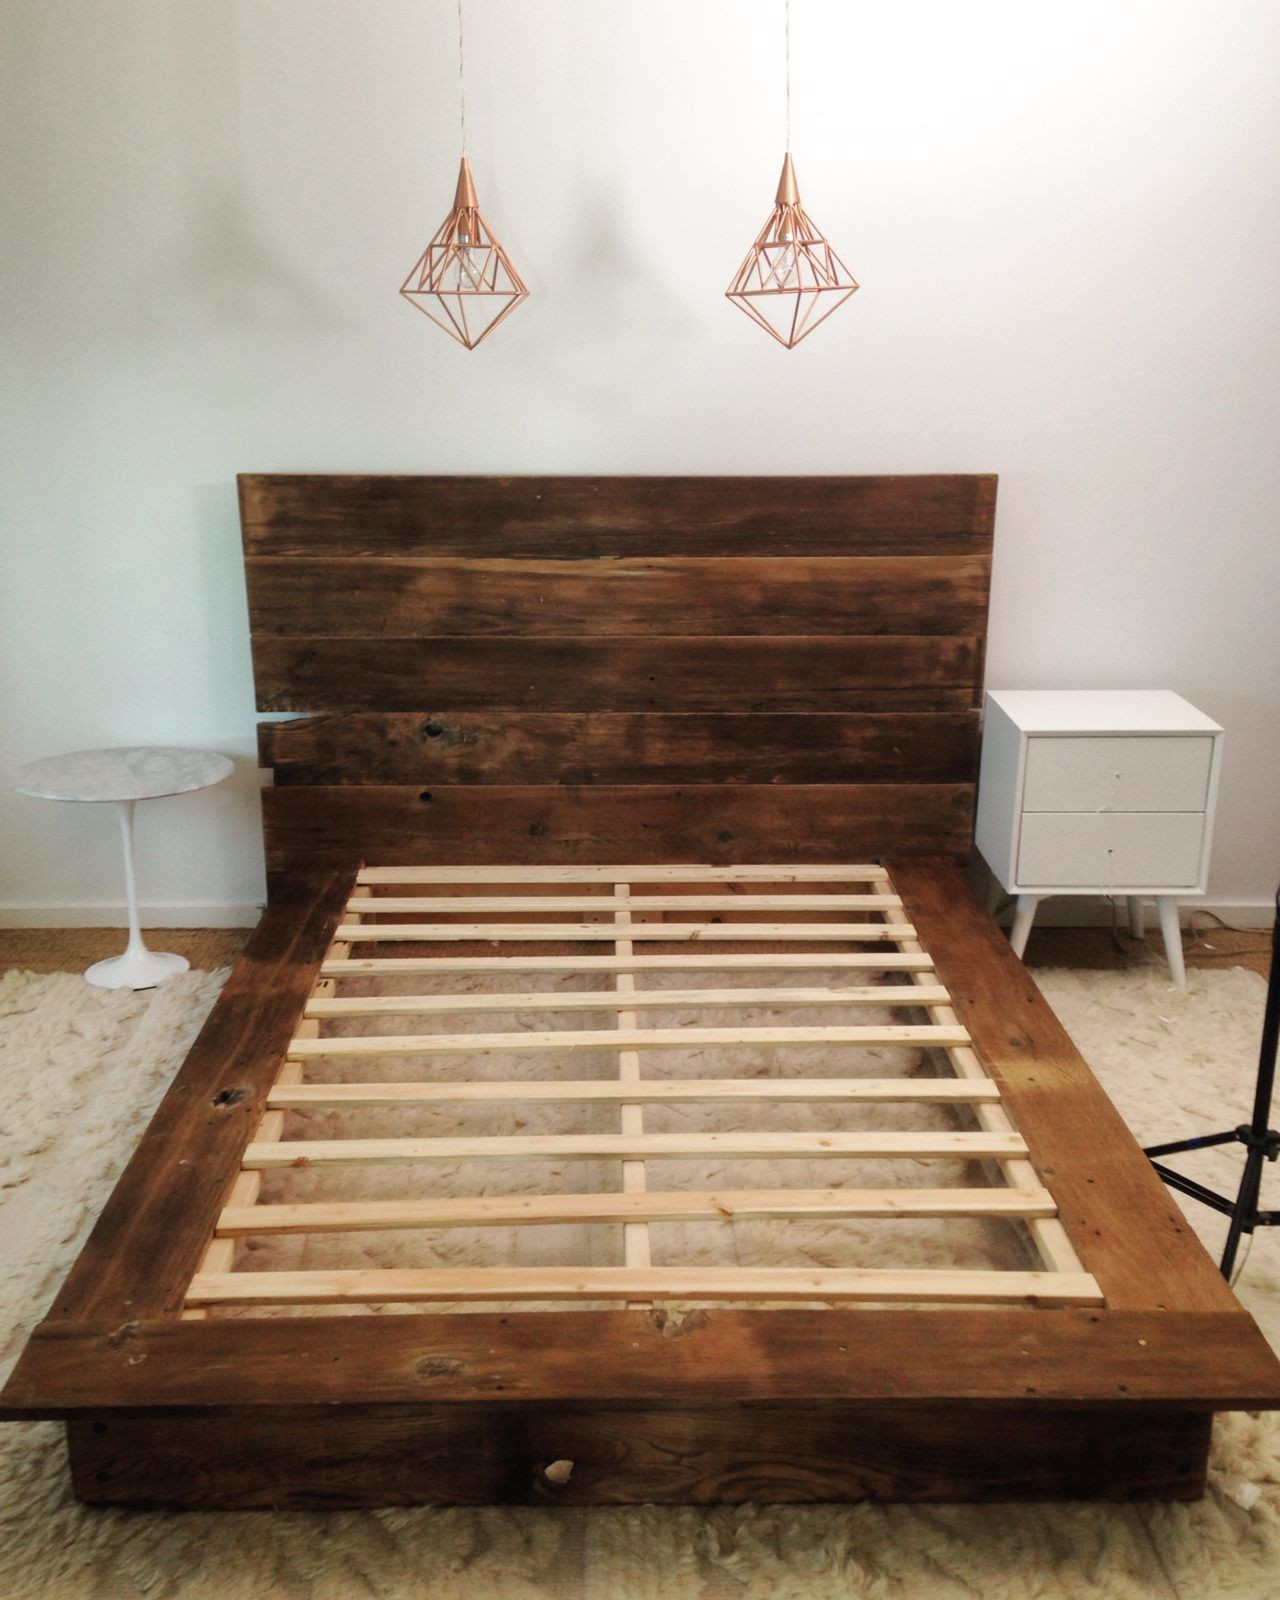 DIY Wooden Bed Platform
 DIY Reclaimed Wood Platform Bed